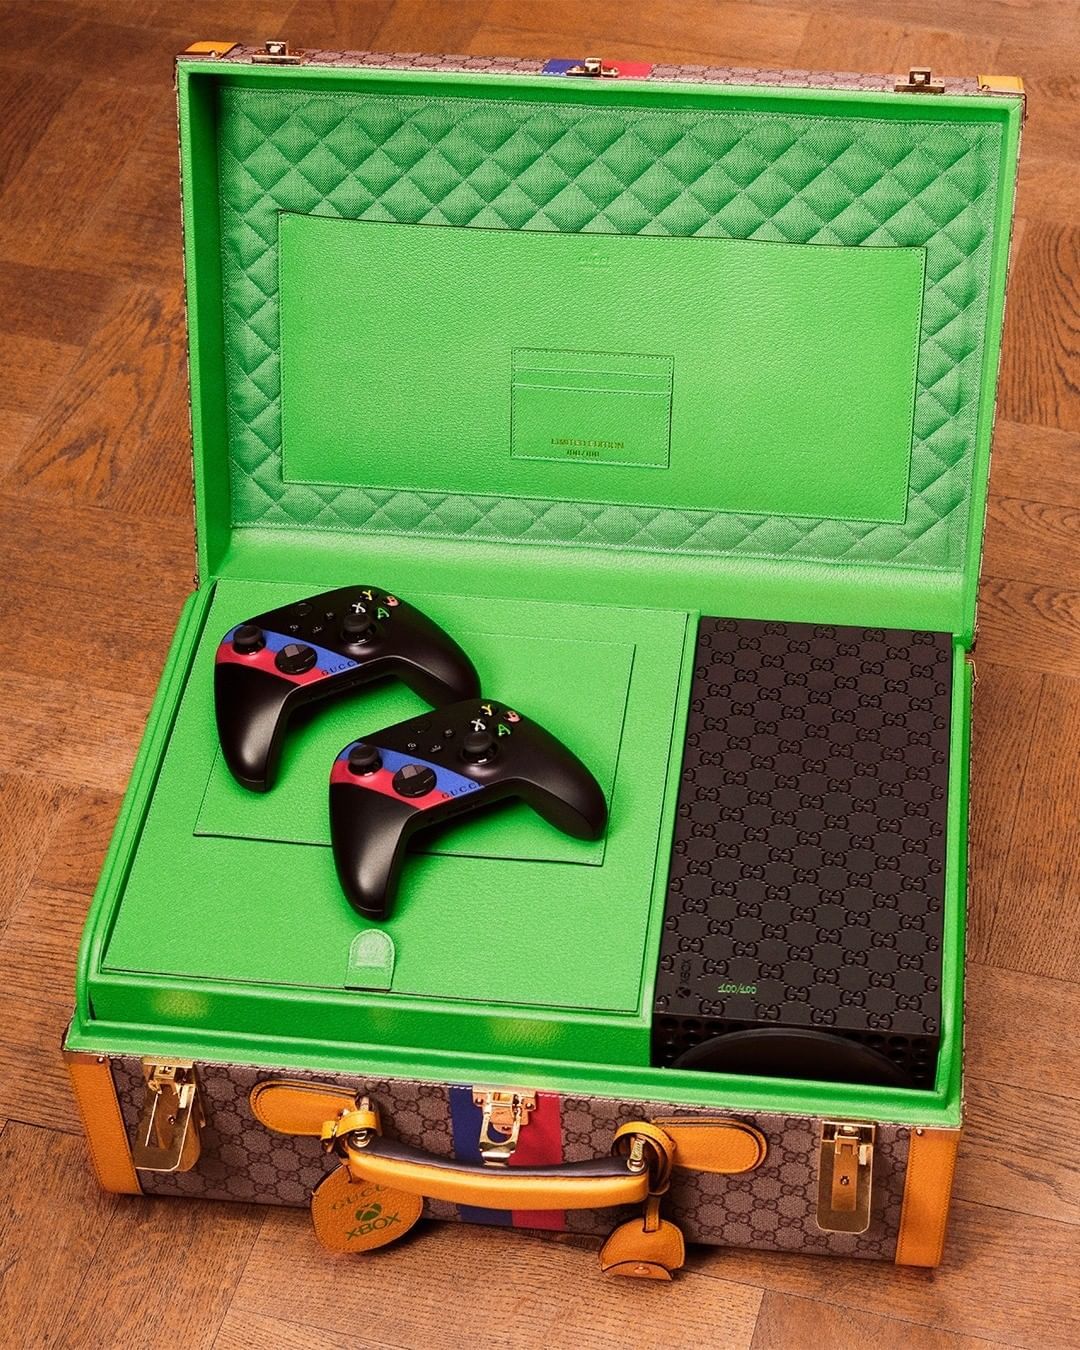 Konsol Mewah Xbox dan Gucci Ini Dijual Rp 142 juta